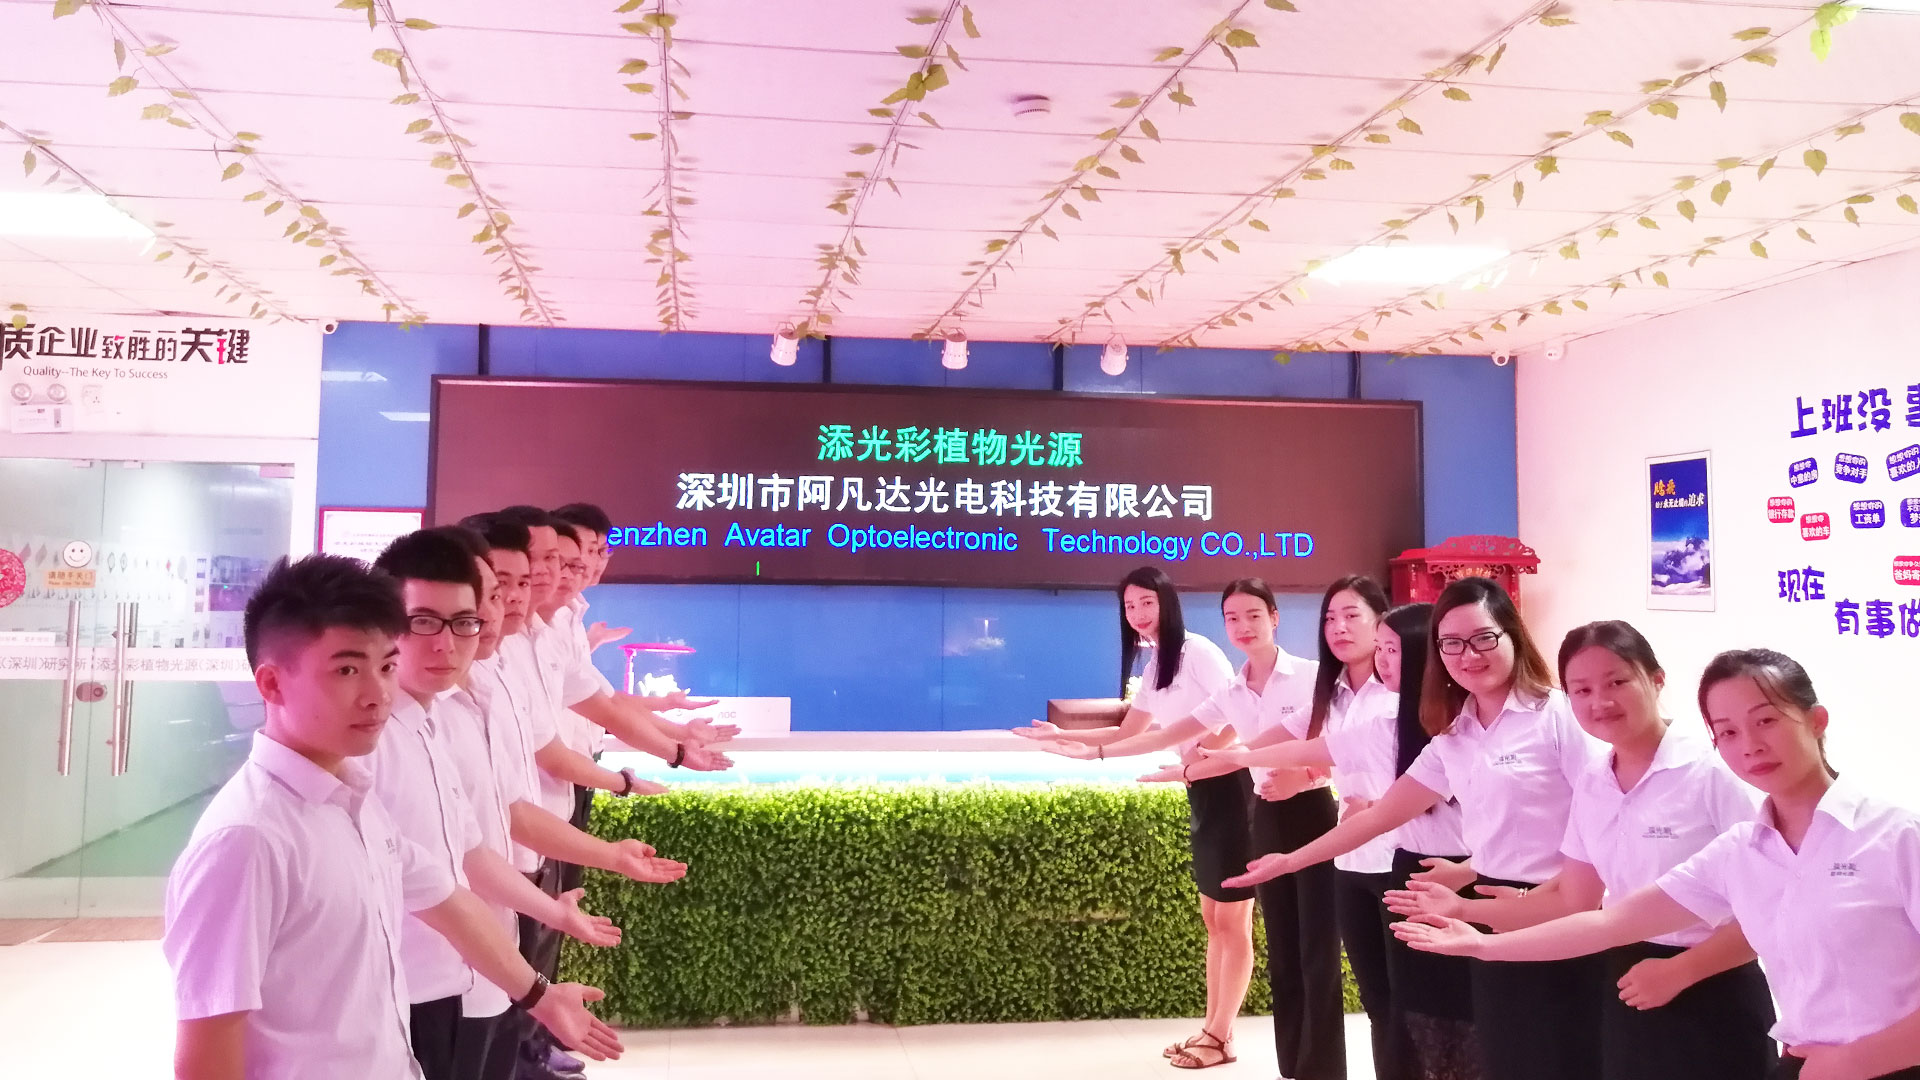 Lampes de culture de plantes à LED et système de culture hydroponique de Shenzhen Avatar Optoelectronic Technology co., Ltd